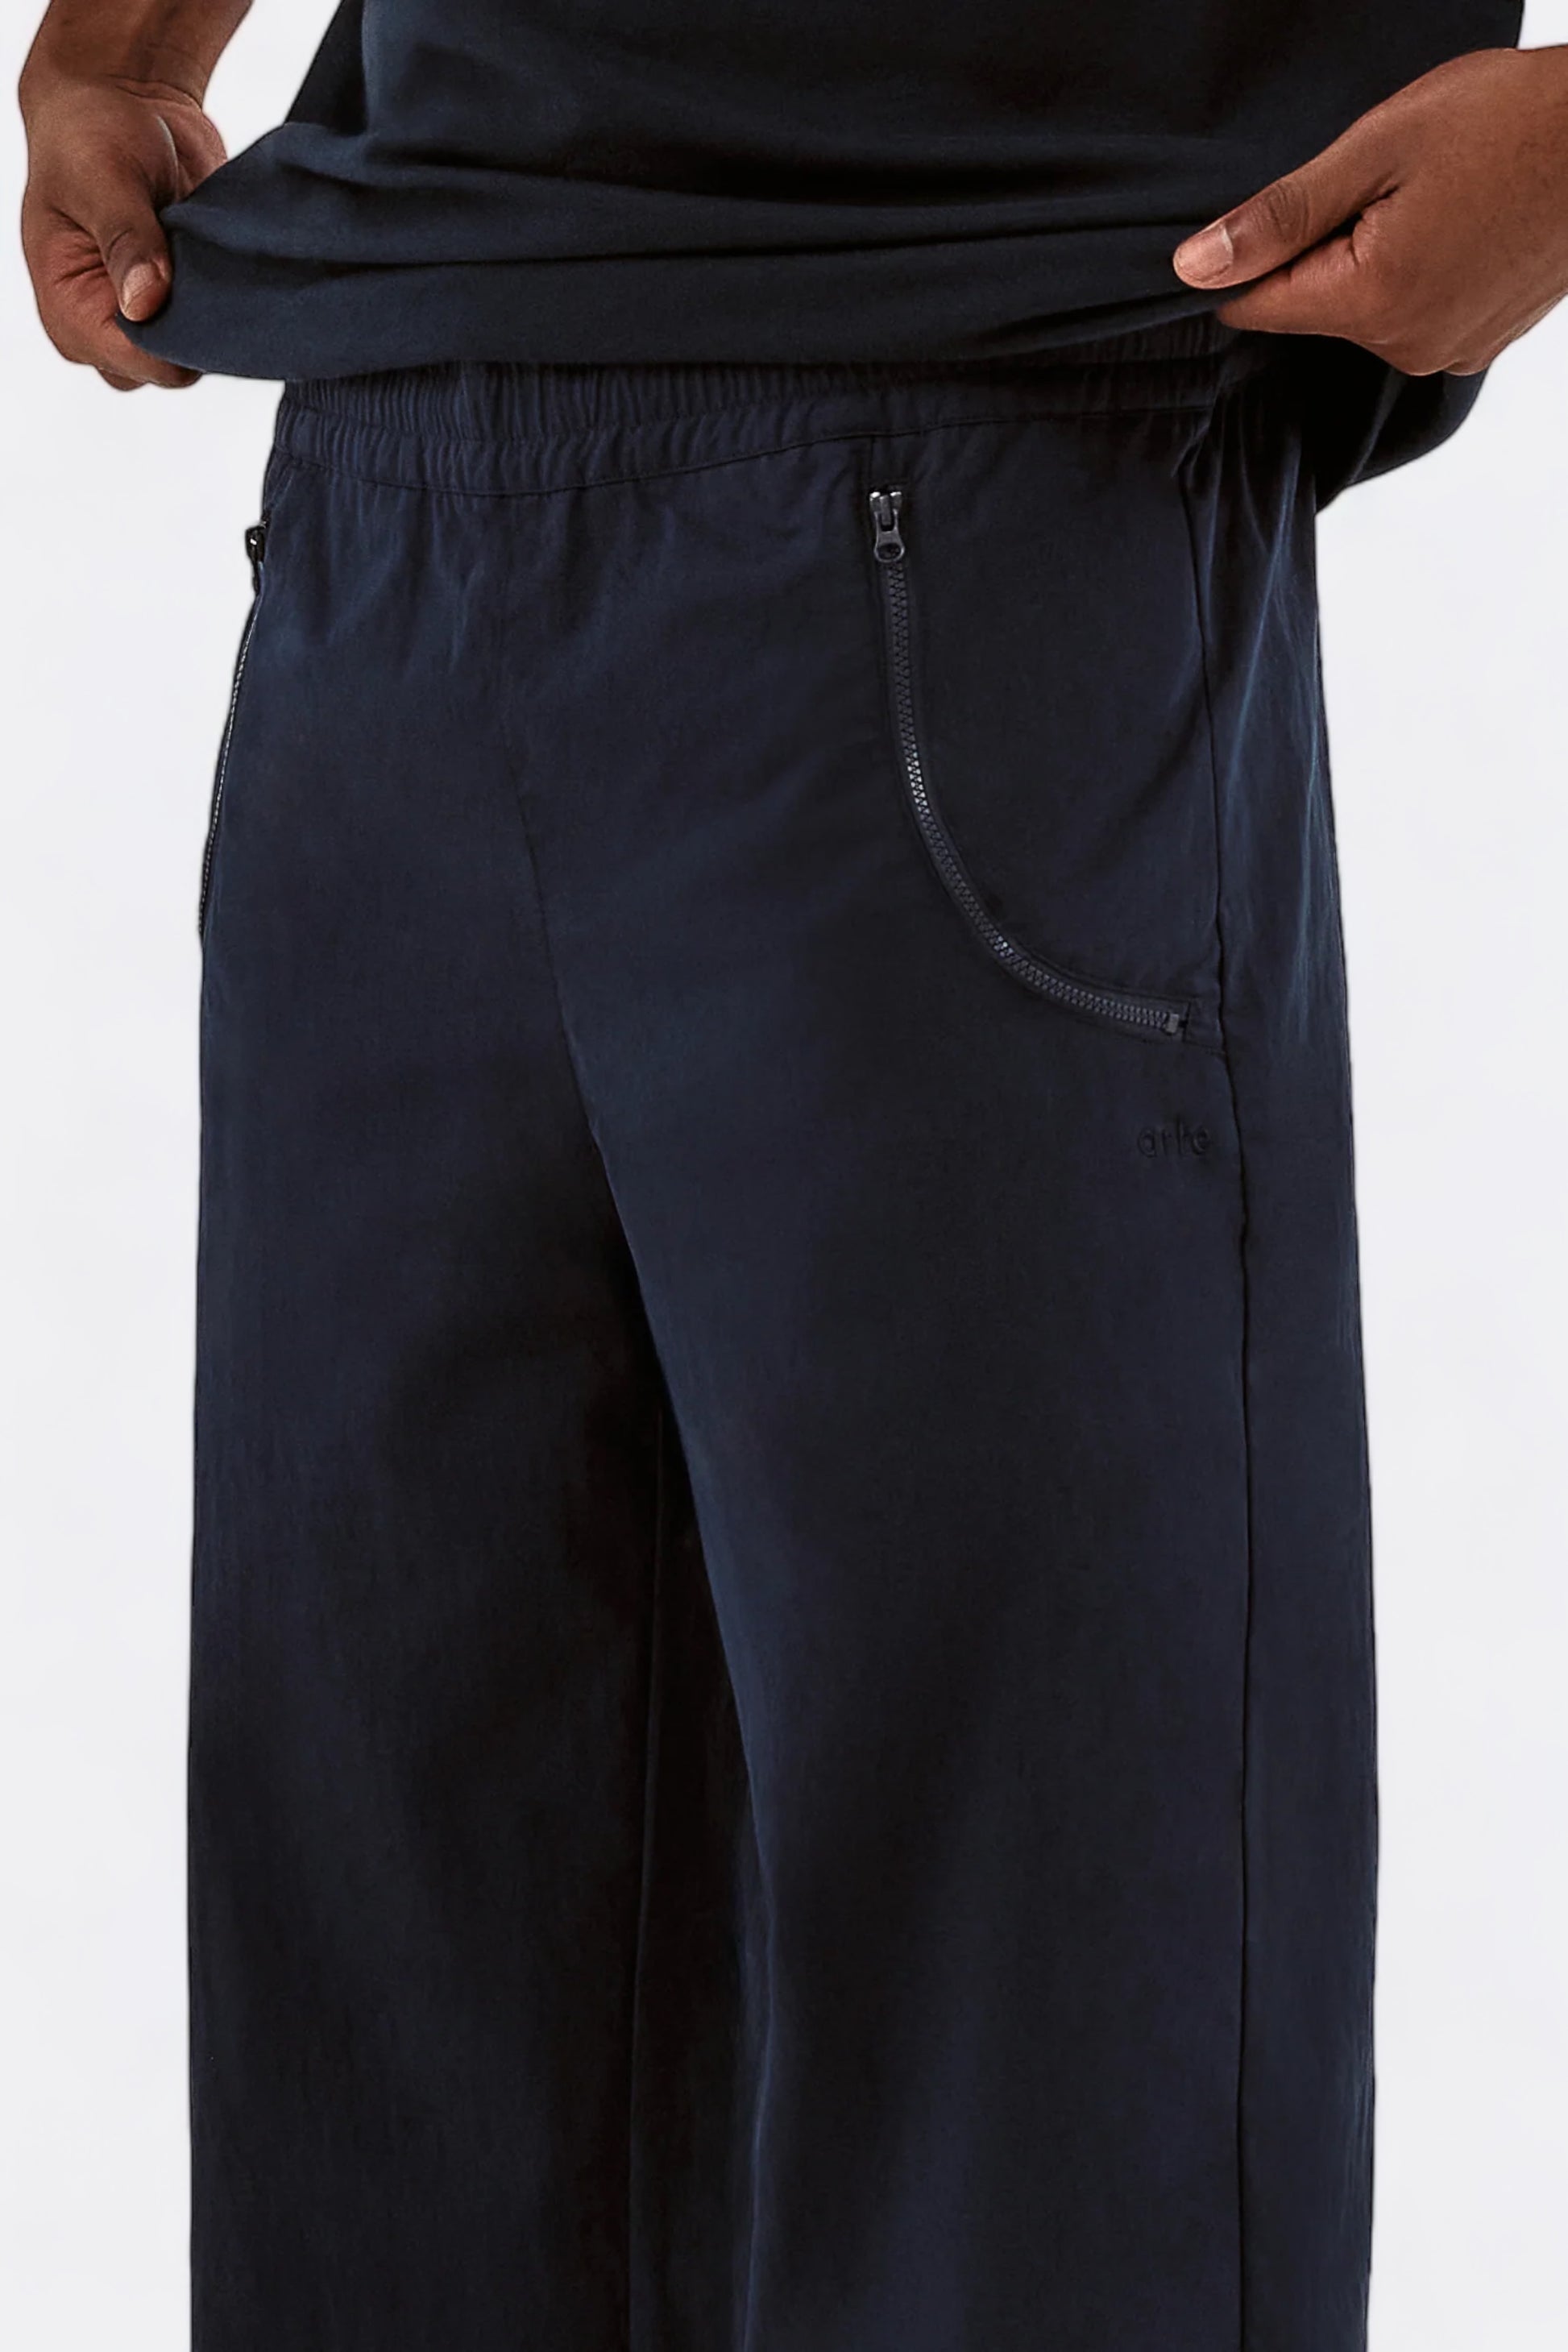 Arte - Jesse Pocket Pants (Navy)